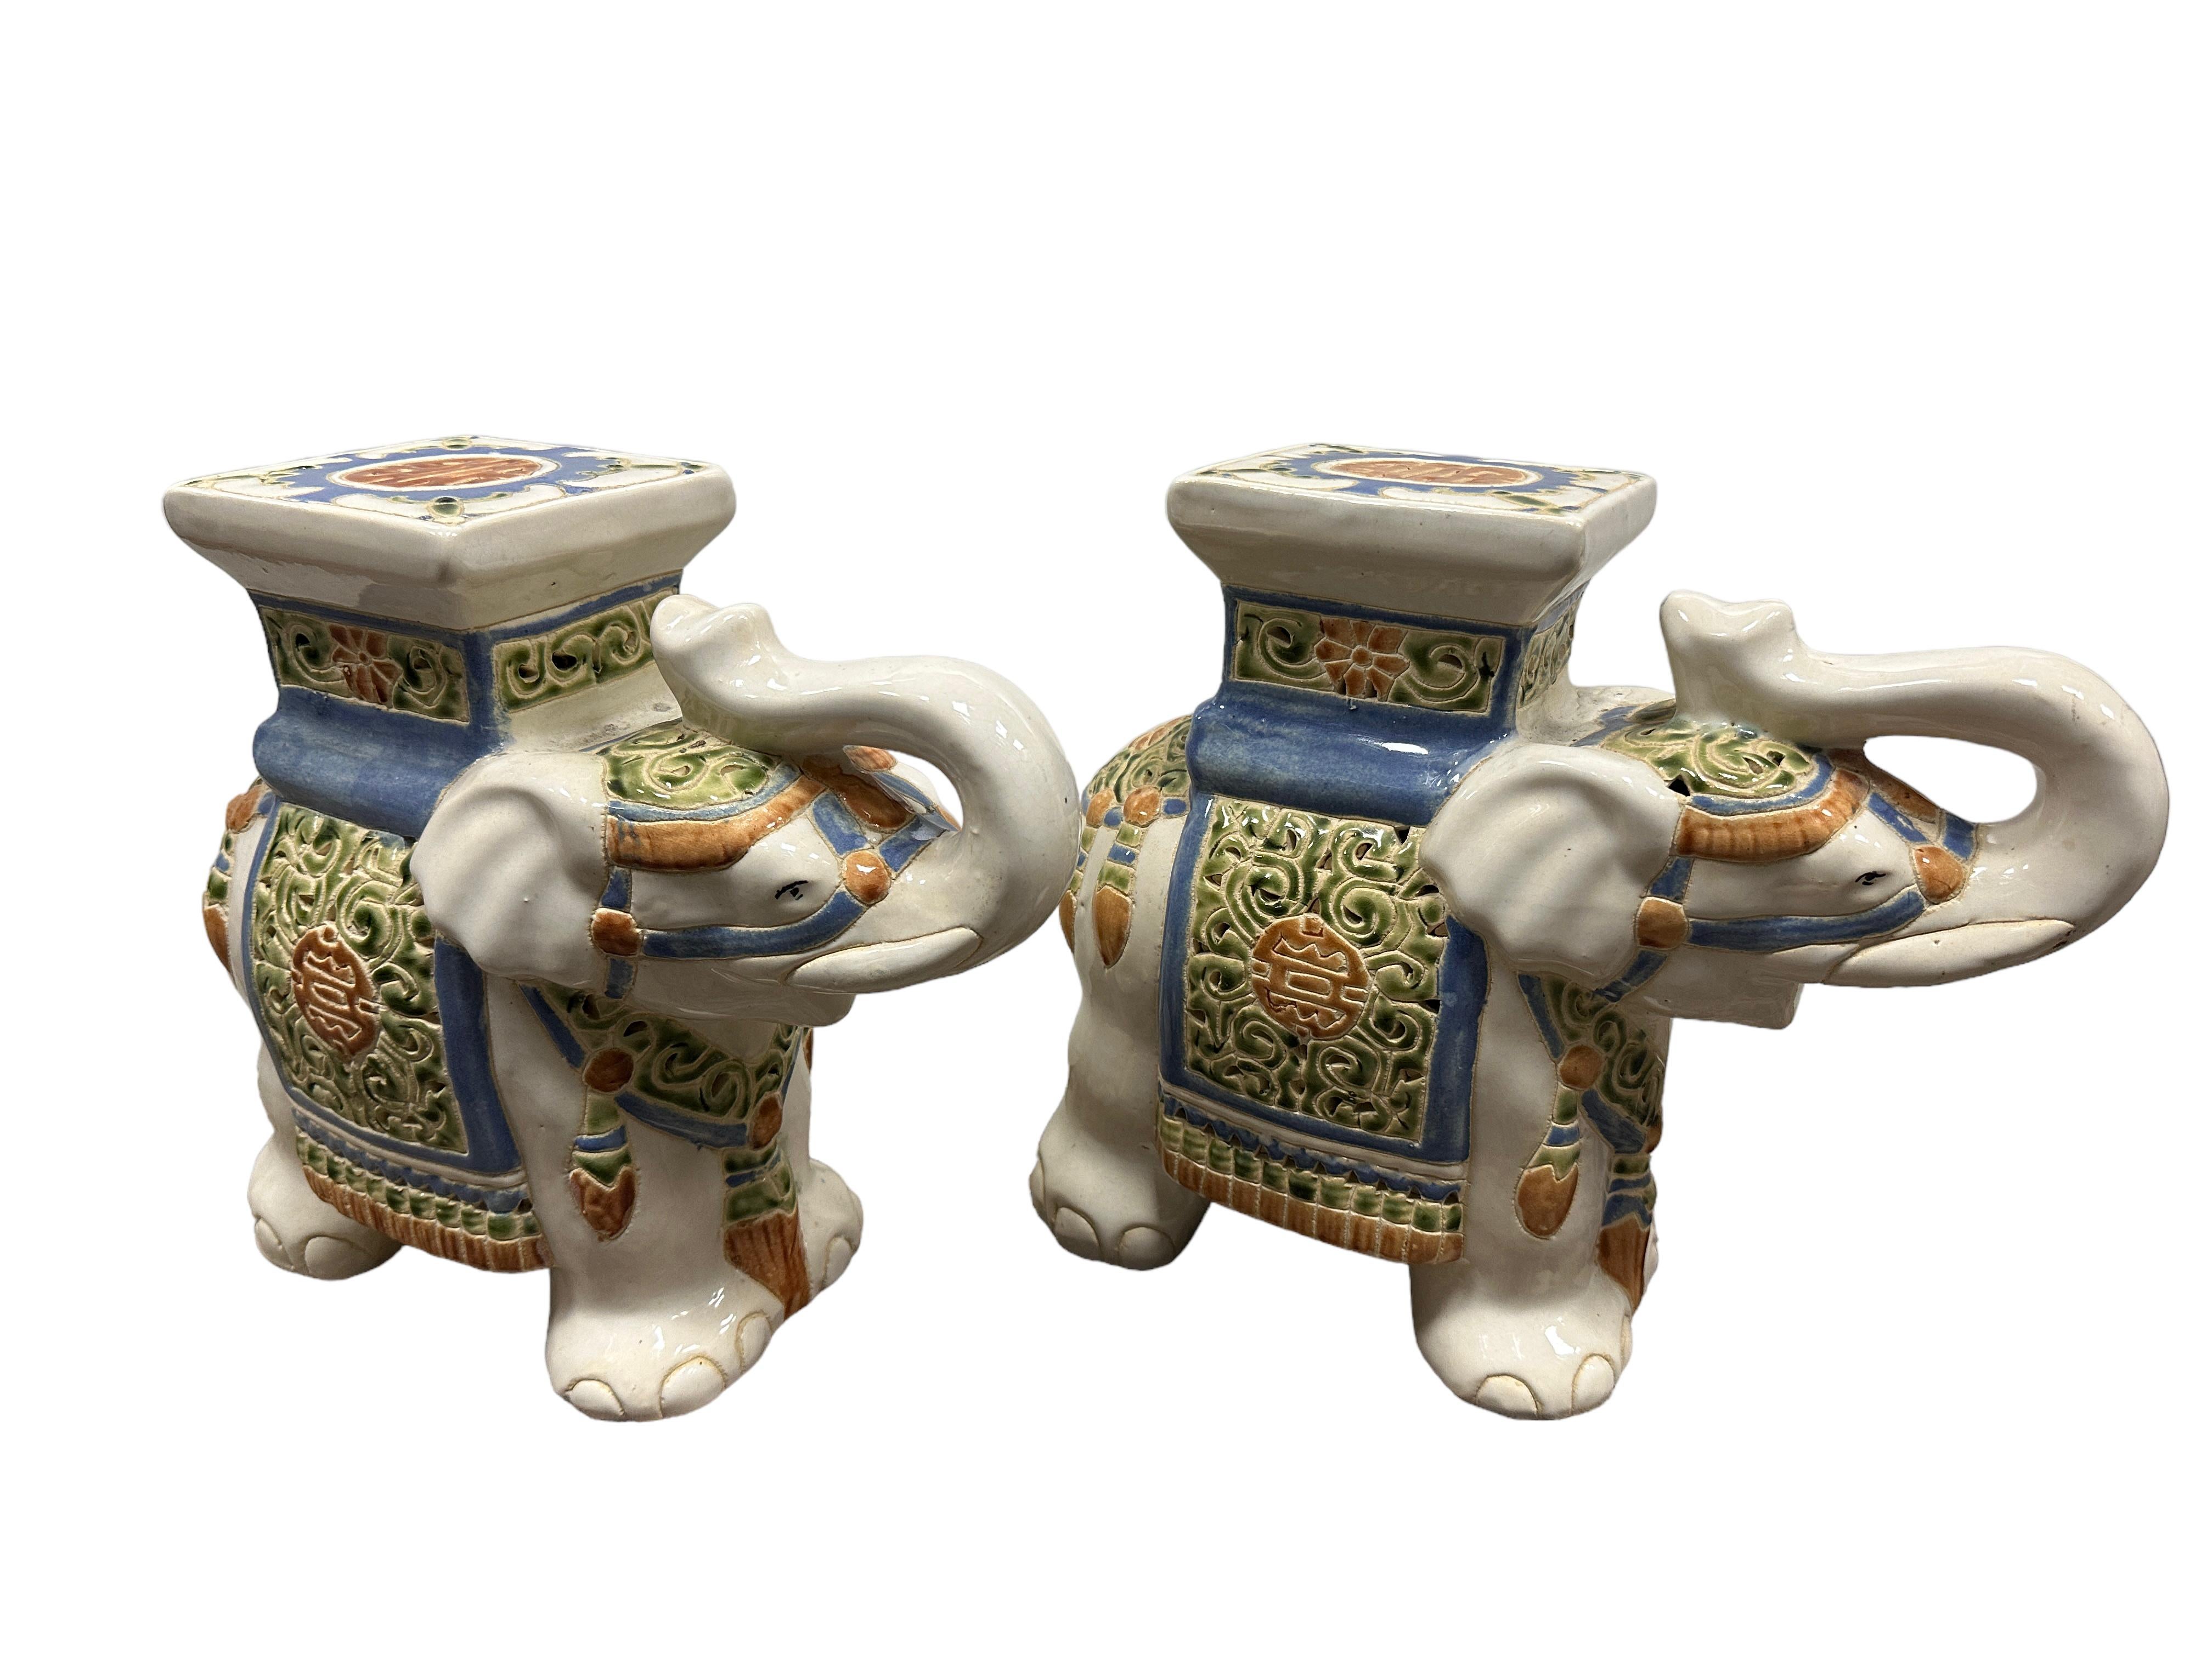 Ein Paar zierliche glasierte Elefantenblumentopfsitze aus Keramik aus der Mitte des 20. Handgefertigt aus Keramik. Eine schöne Ergänzung für Ihr Haus, Ihre Terrasse oder Ihren Garten. Gefunden bei einem Nachlassverkauf in Nürnberg, Deutschland.